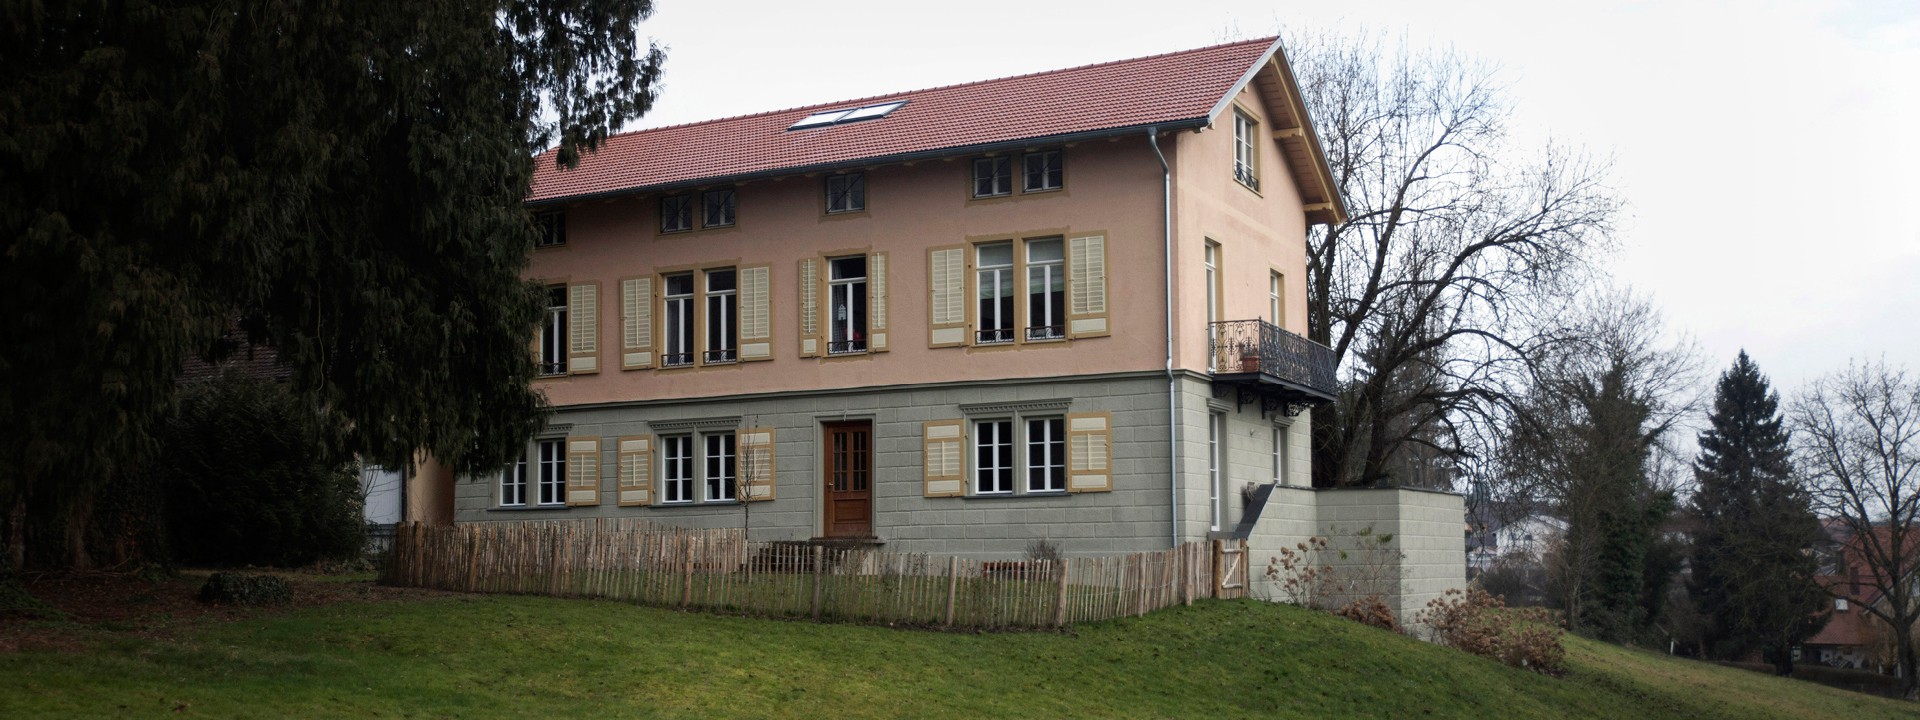 Villa Baron Herrmann nach der Sanierung